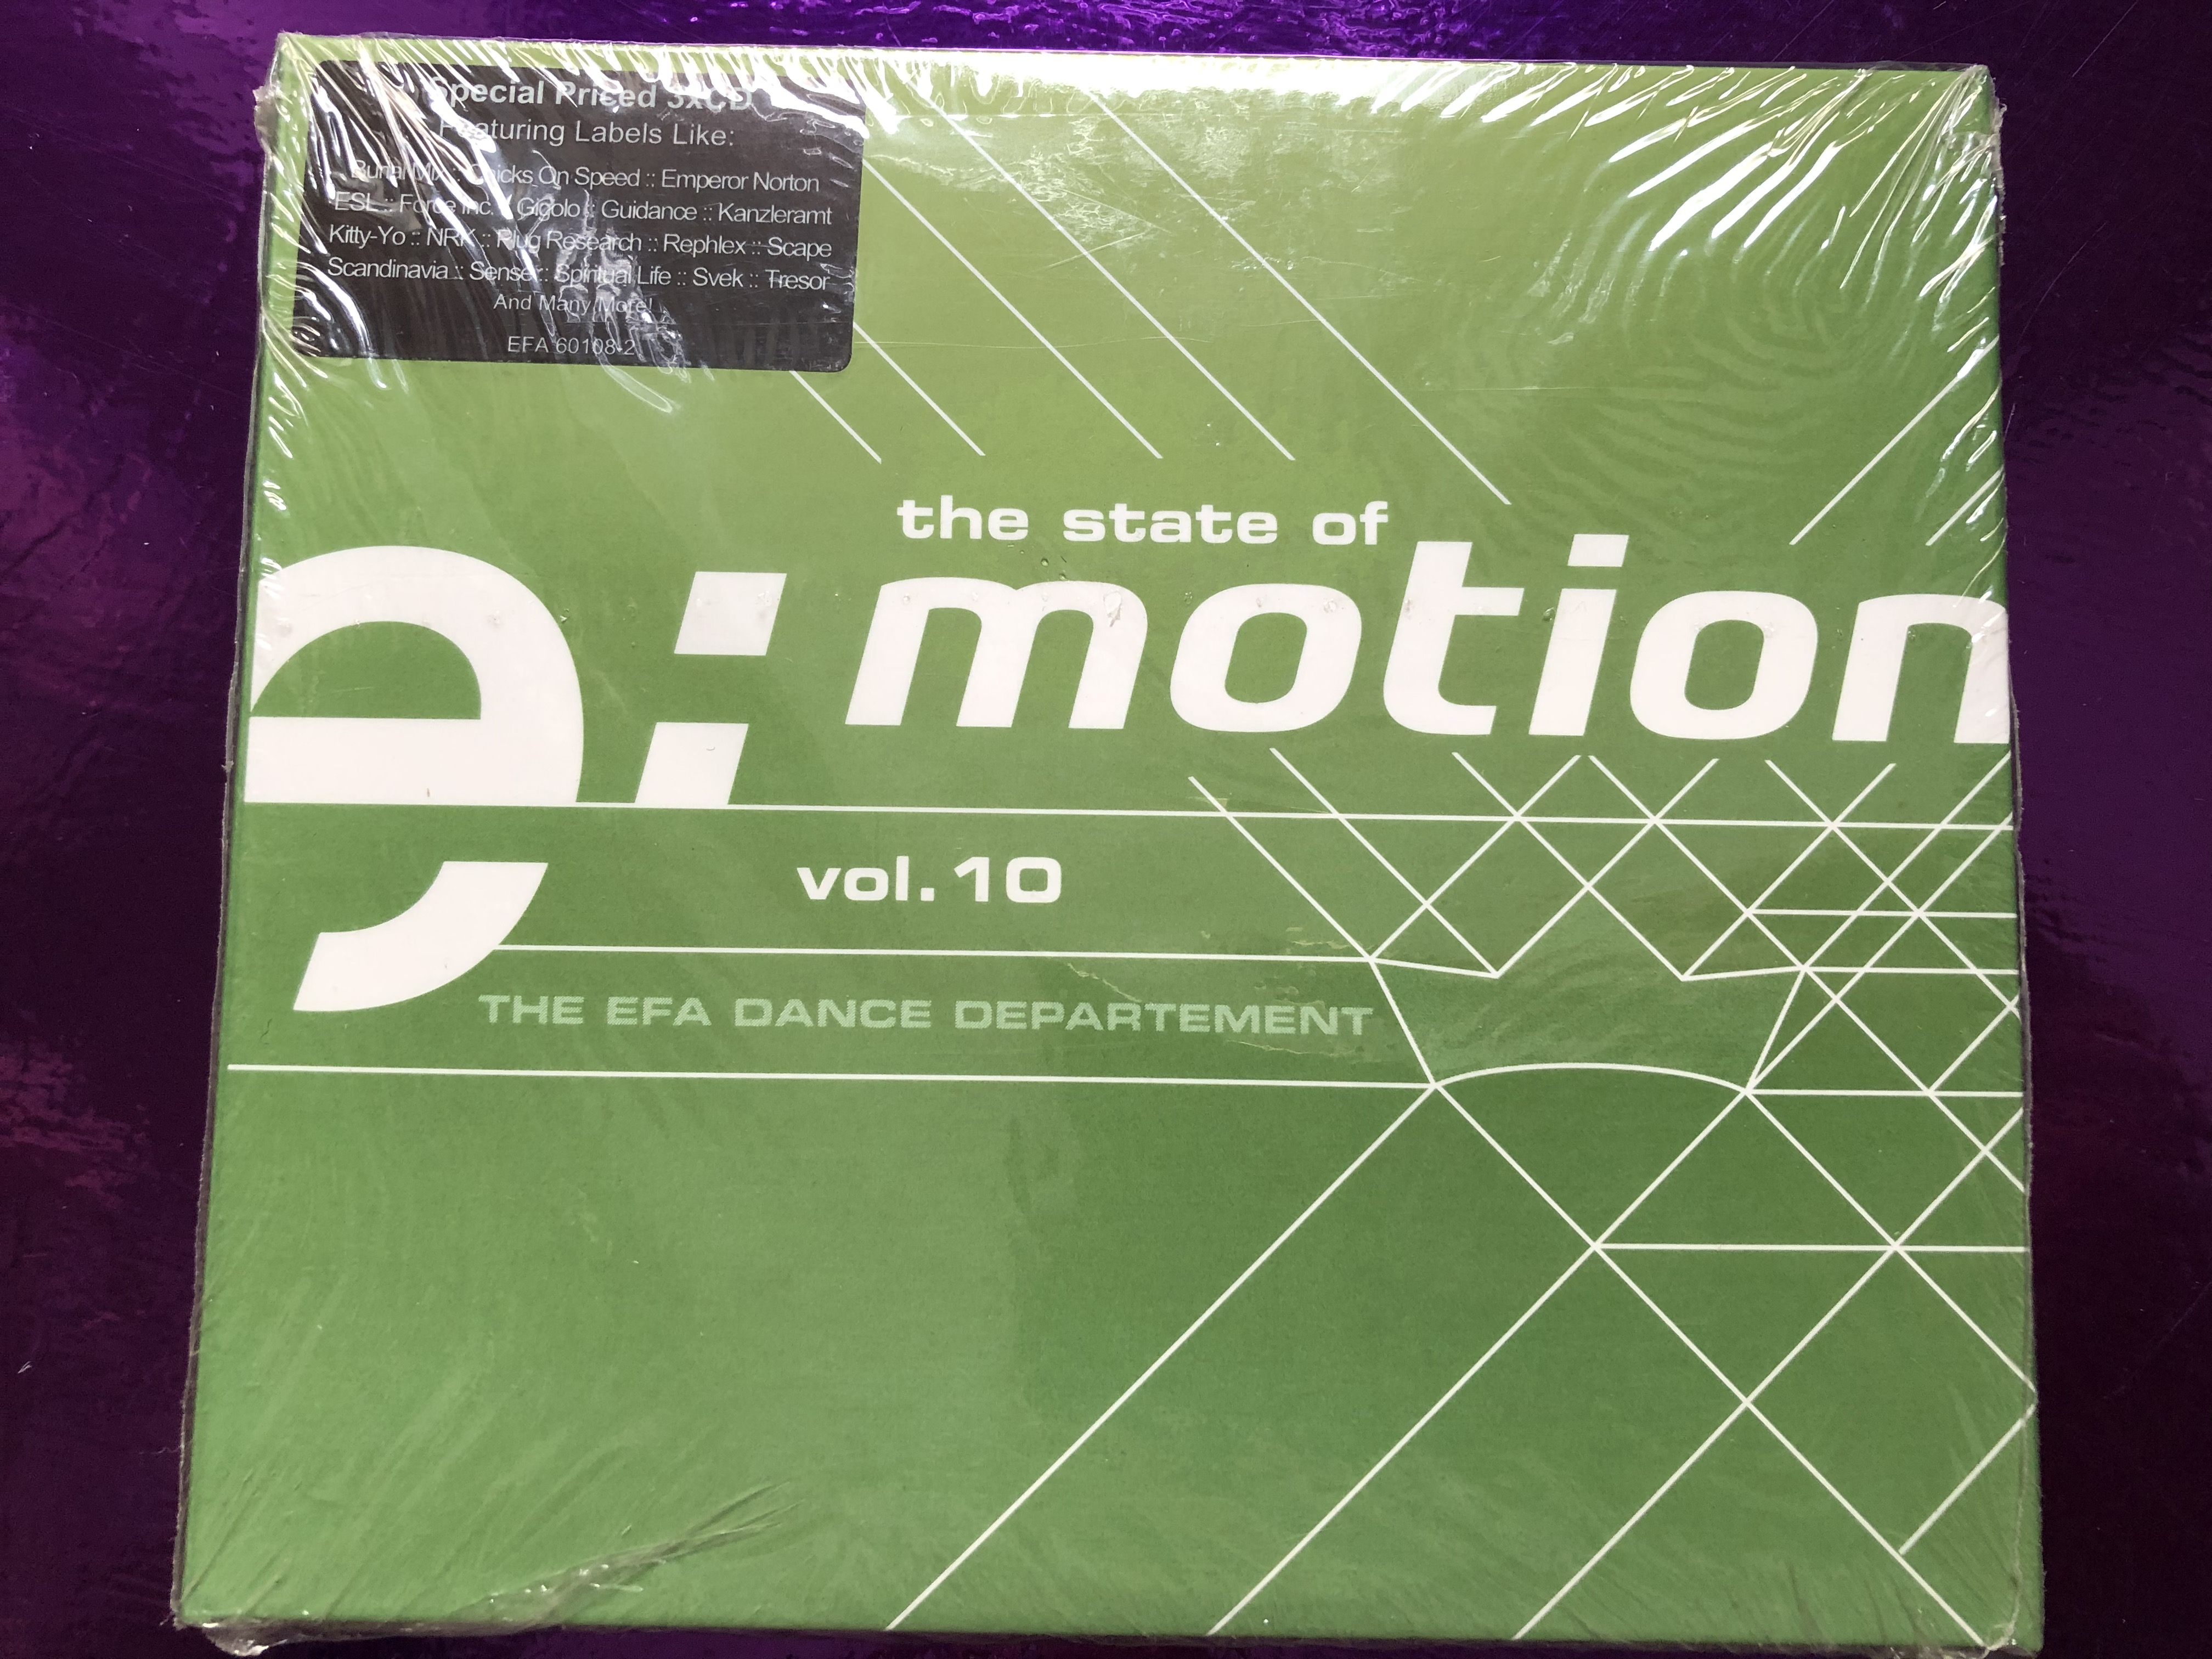 the-state-of-emotion-vol.10-the-efa-dance-departement-emotion-3x-audio-cd-2002-efa-60108-2-1-.jpg